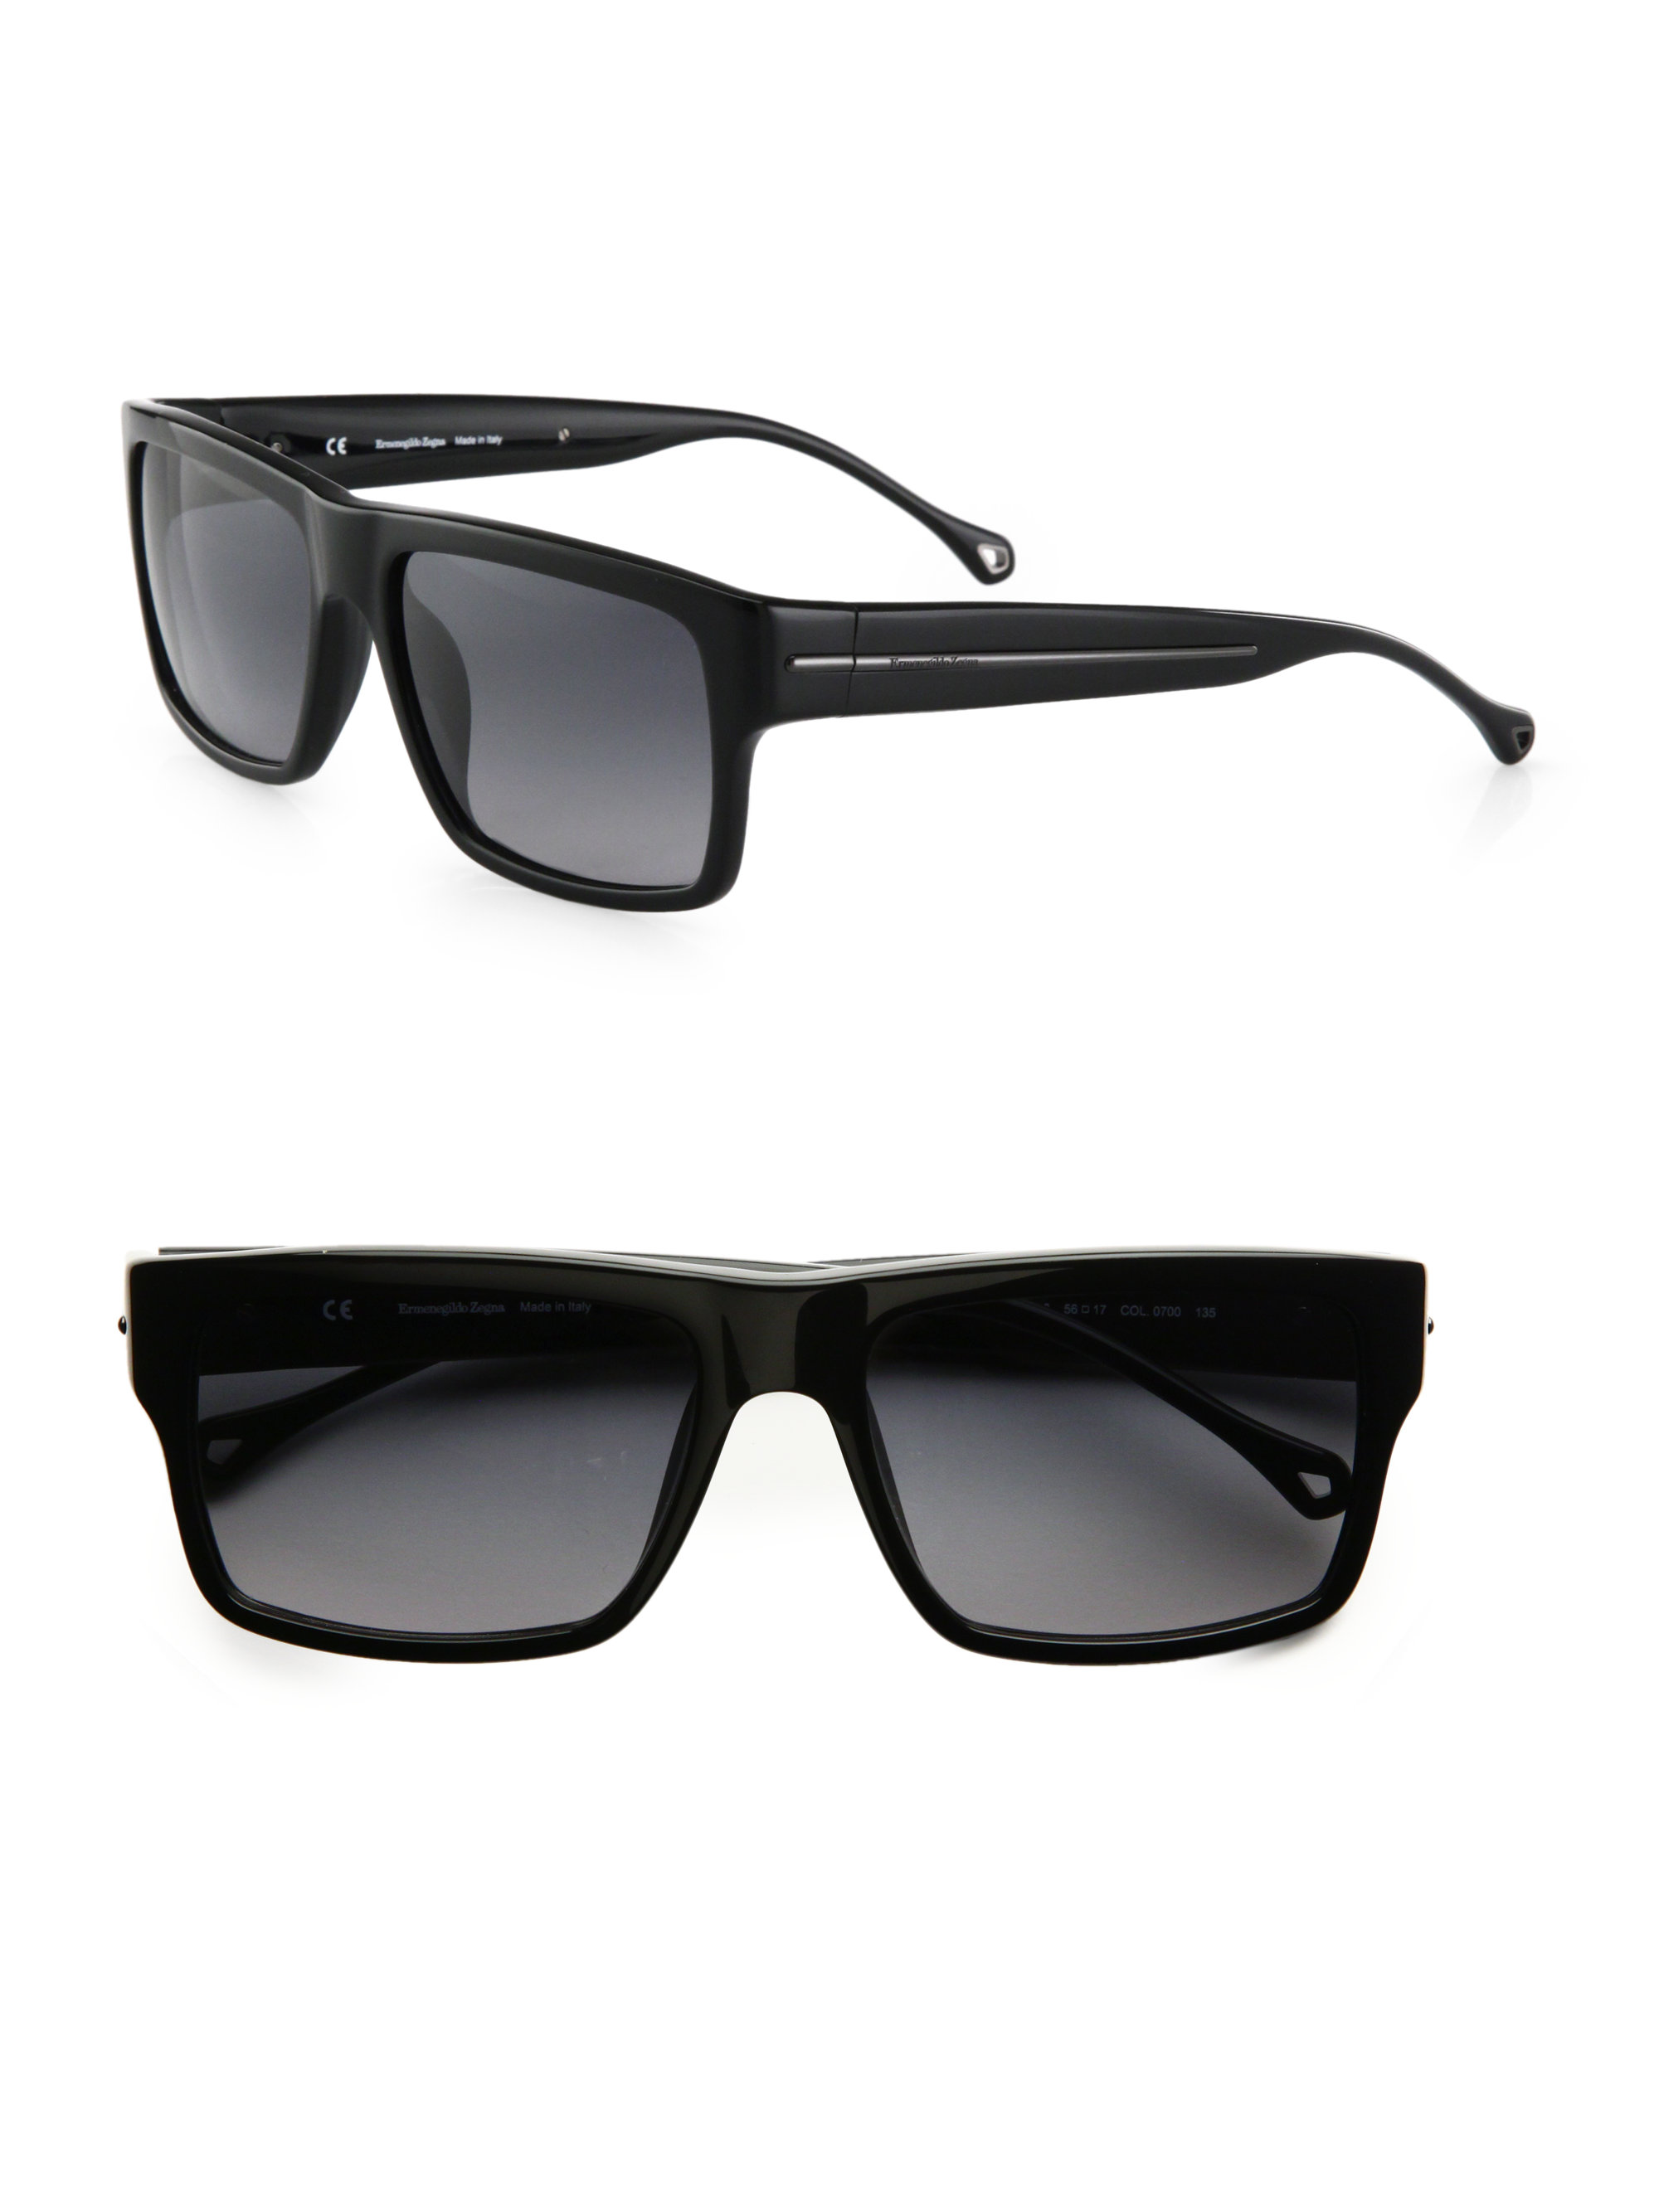 Lyst Ermenegildo Zegna Resin Wayfarer Sunglasses In Black For Men 